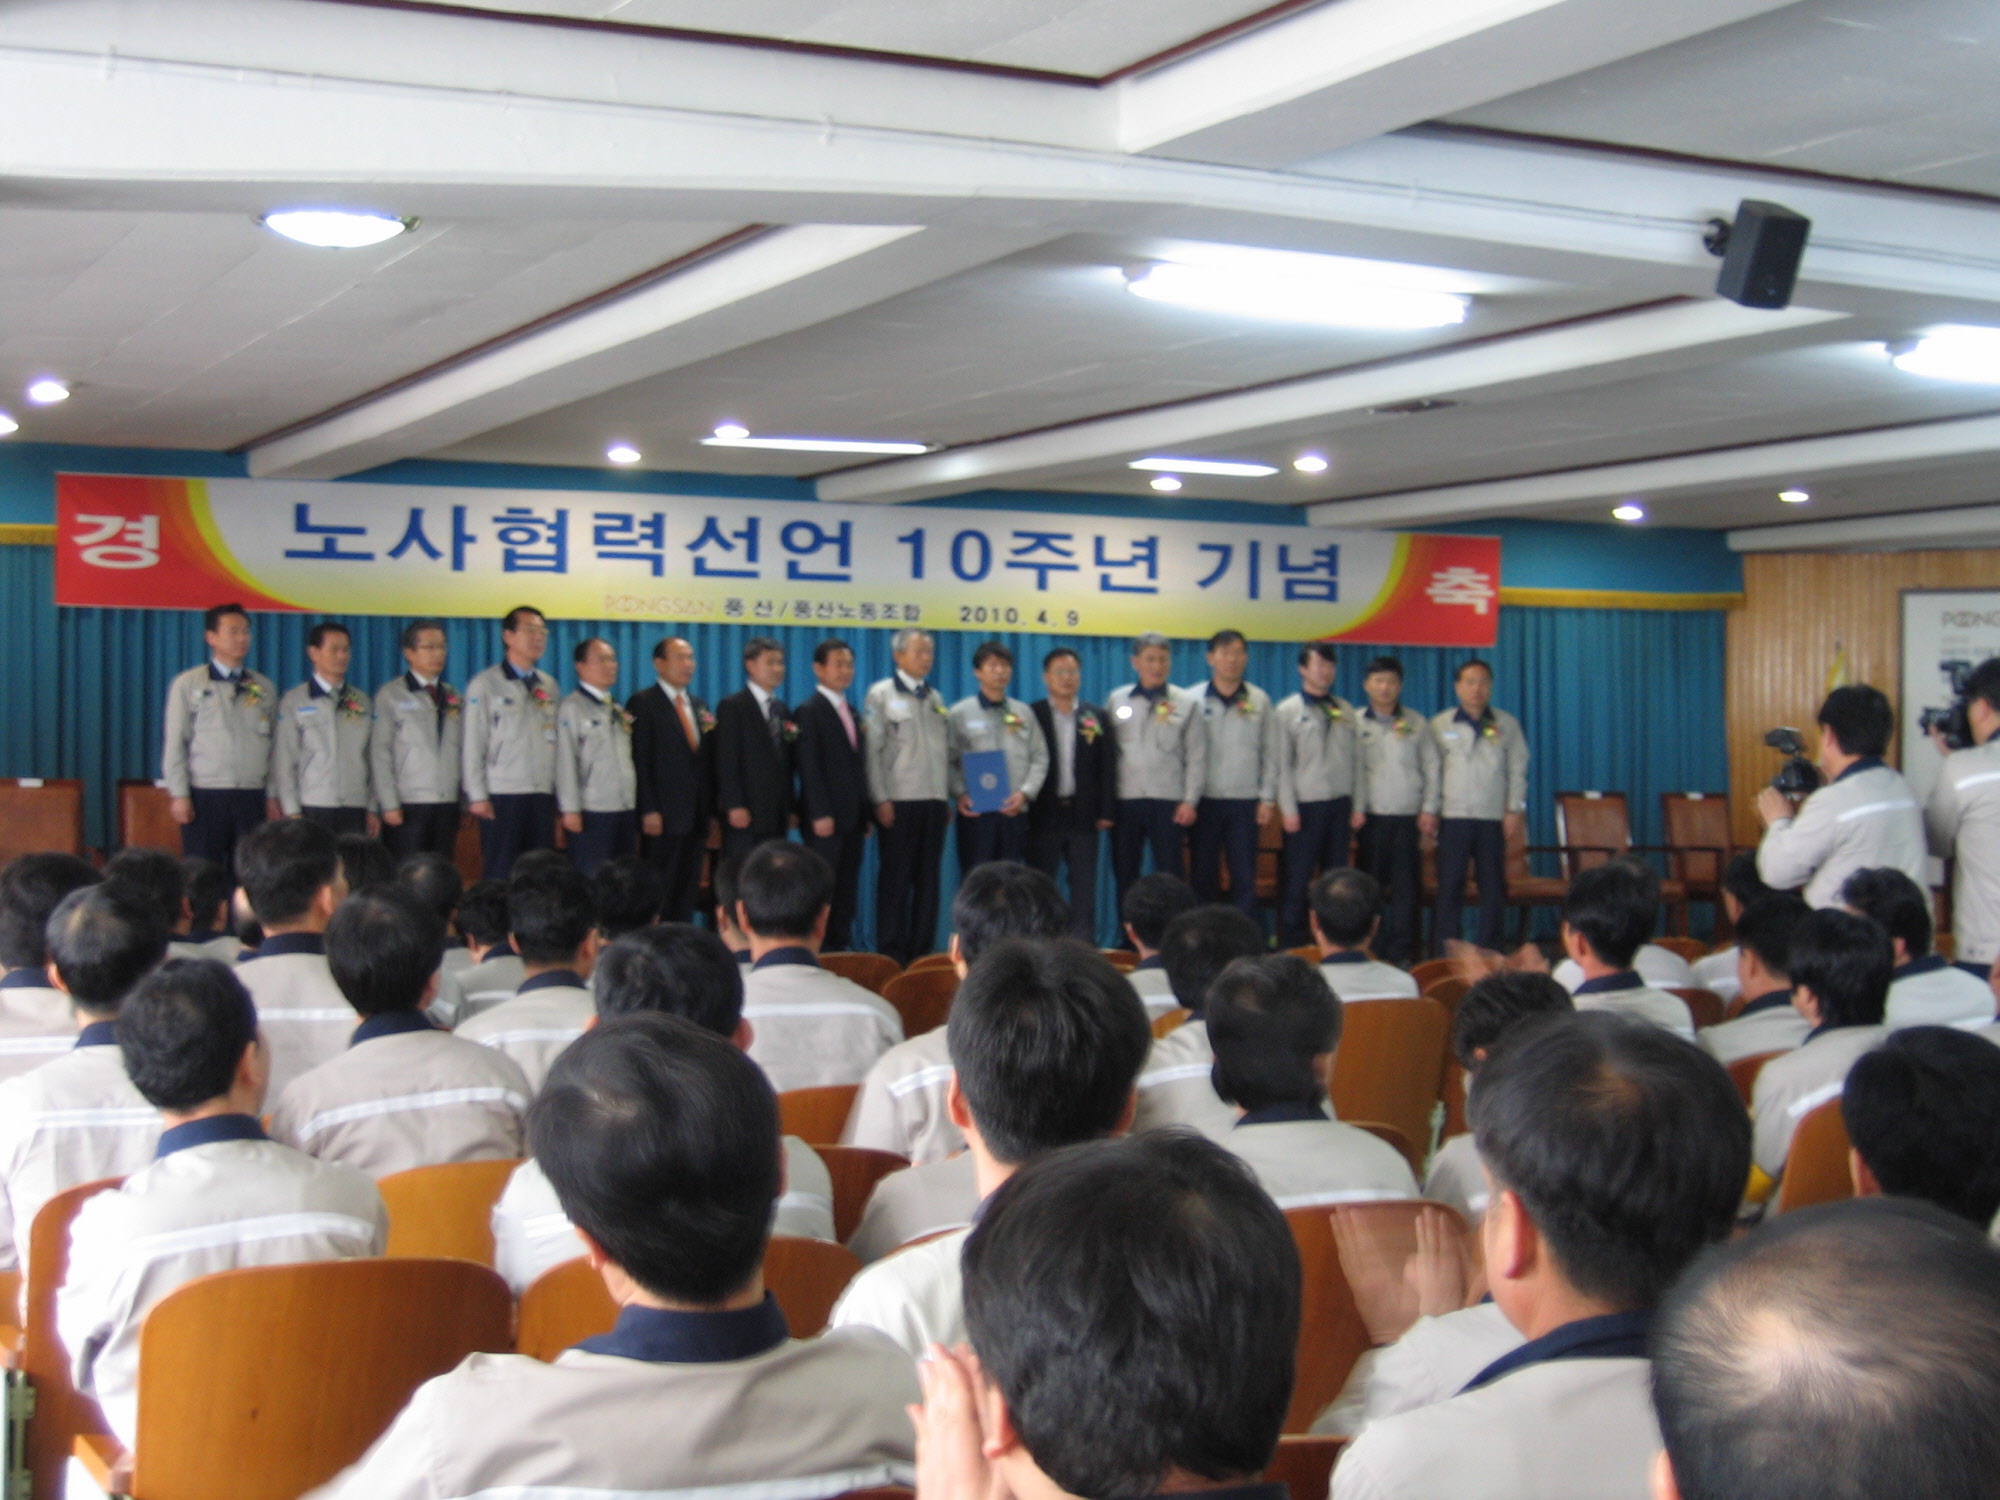 『(주)풍산 노사협력선언 10주년 기념행사 개최』